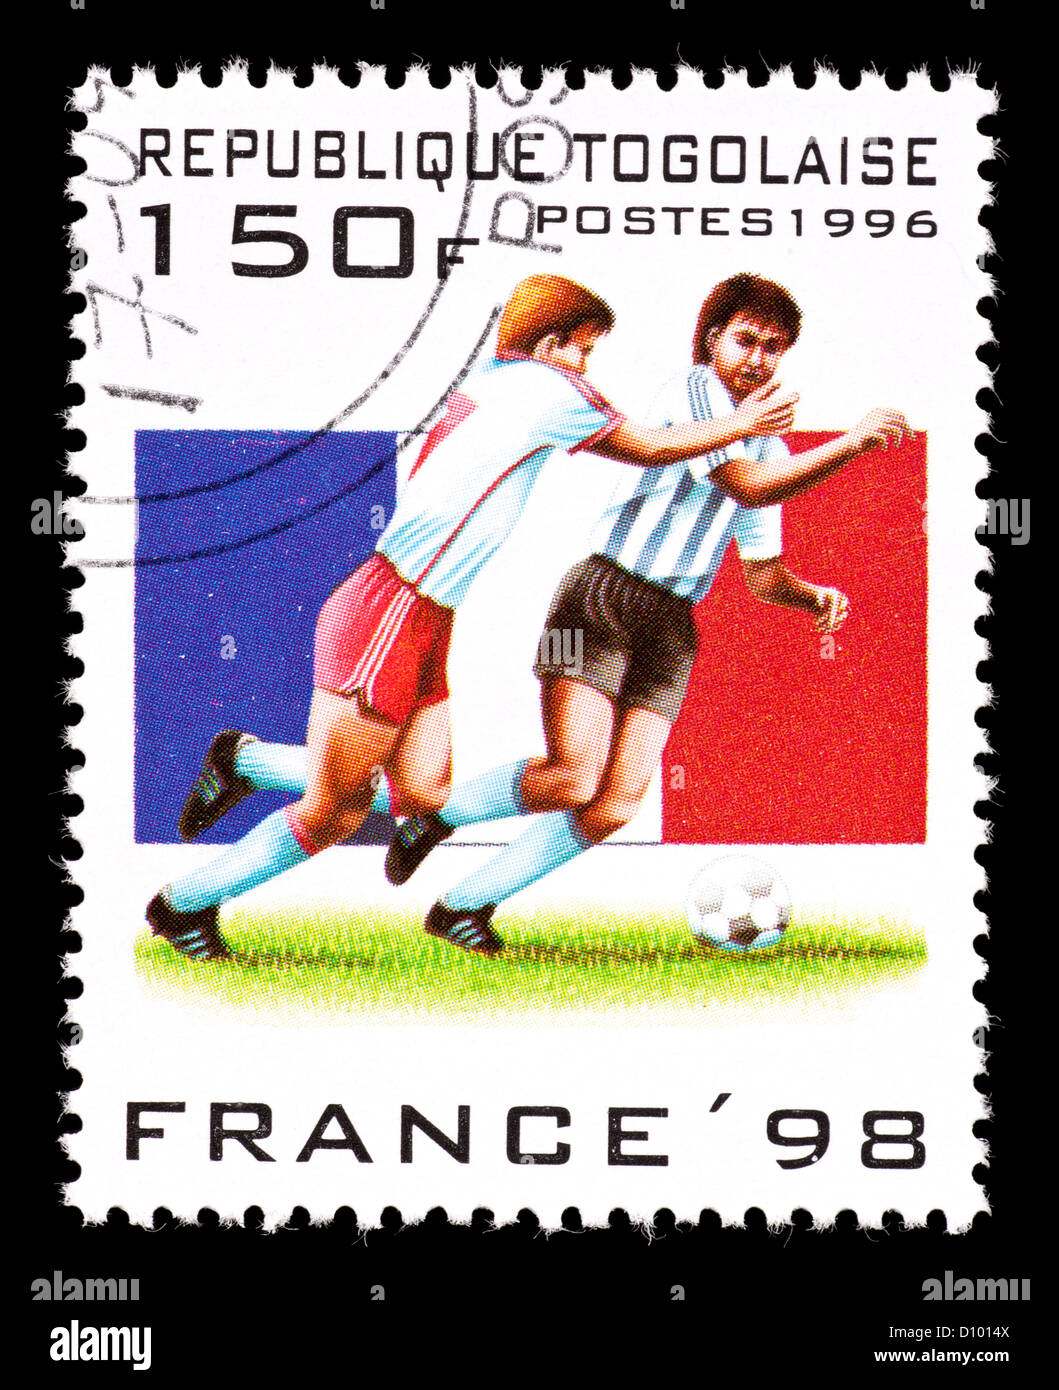 Timbre-poste du Togo représentant des joueurs de football, émis pour la Coupe du Monde de football 1998 en France. Banque D'Images